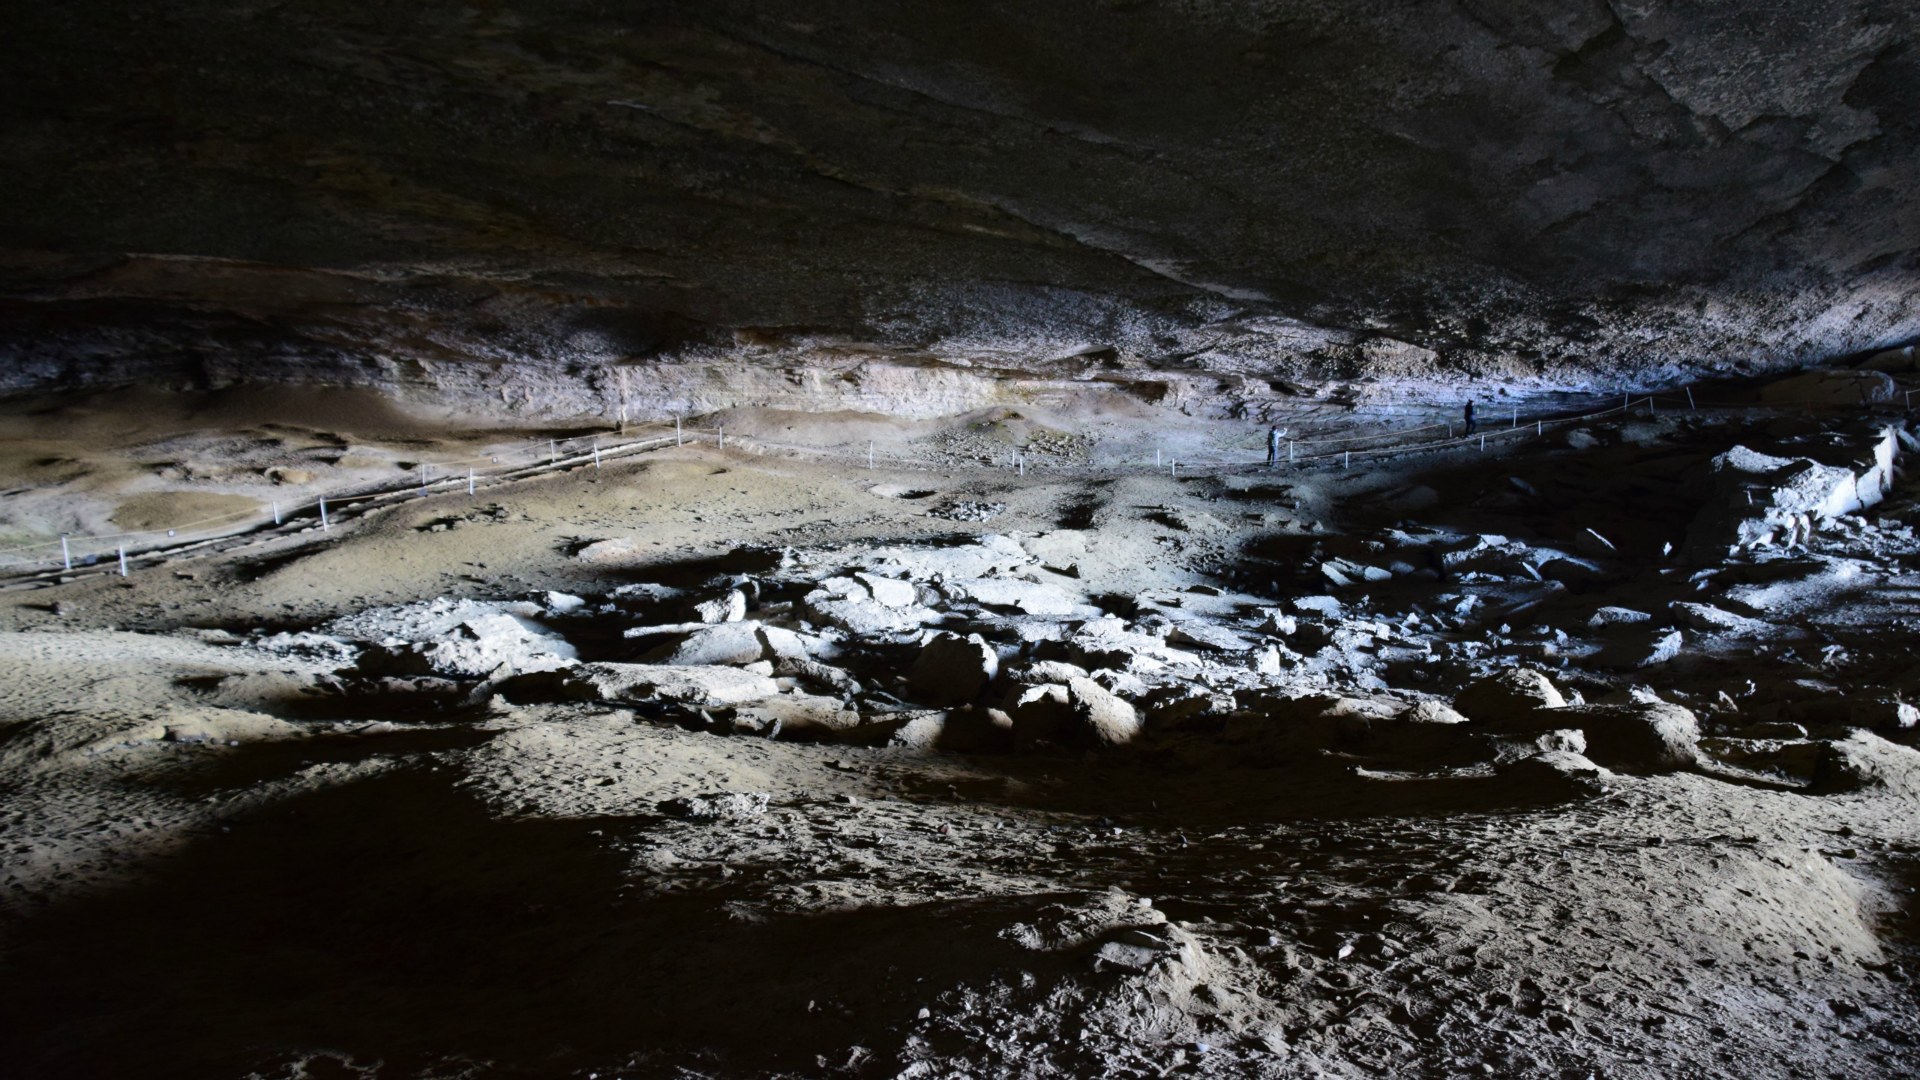 Cueva del Milodon near Puerto Natales